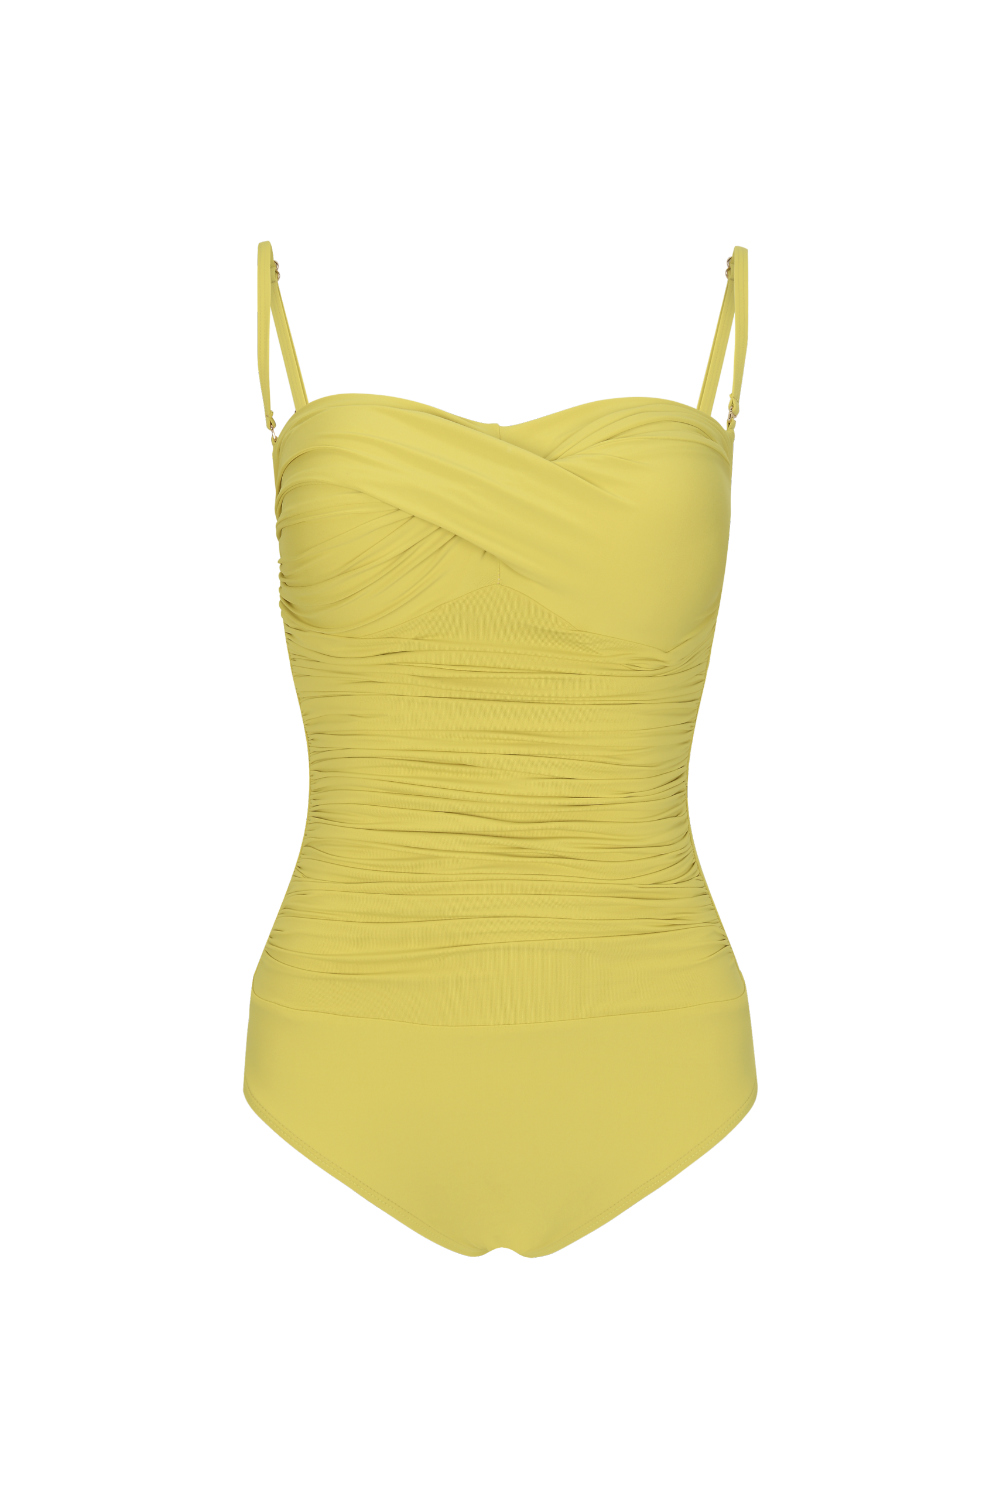 游泳衣/内部磨损 yellow 彩色图像-S2L3